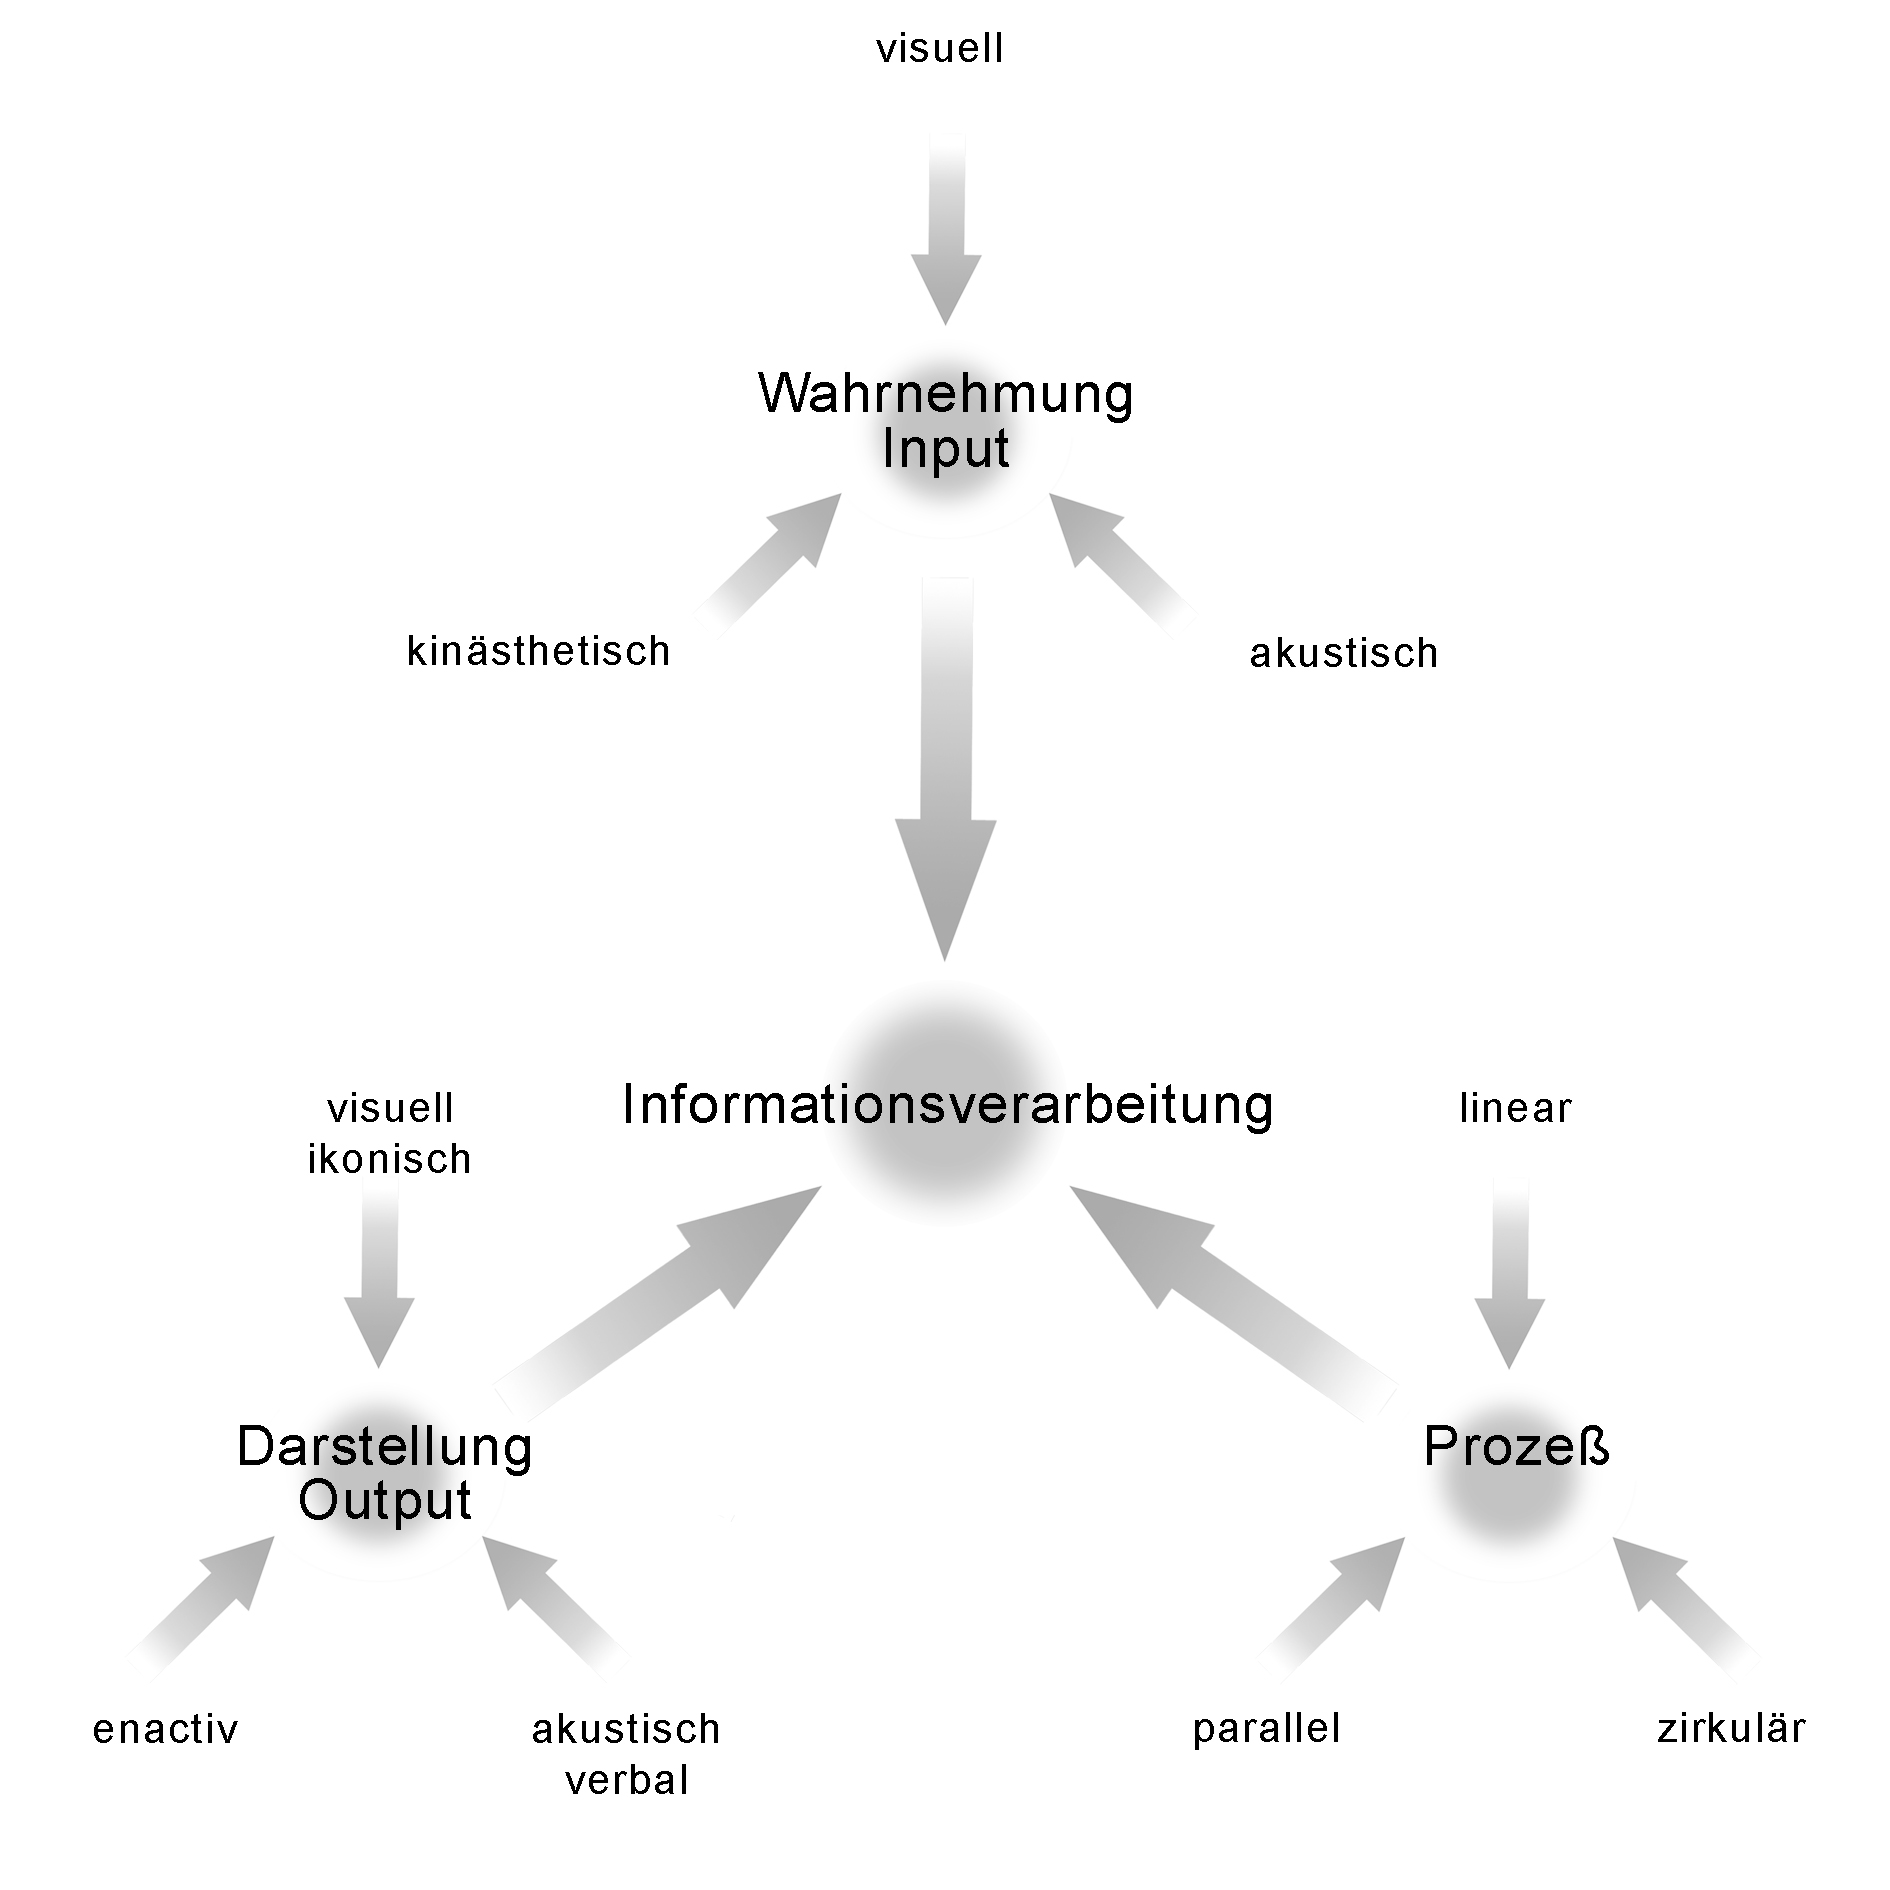 Informationsverarbeitung – Eine Triadentrias mit inhomogenen Konstruktionsprinzipien